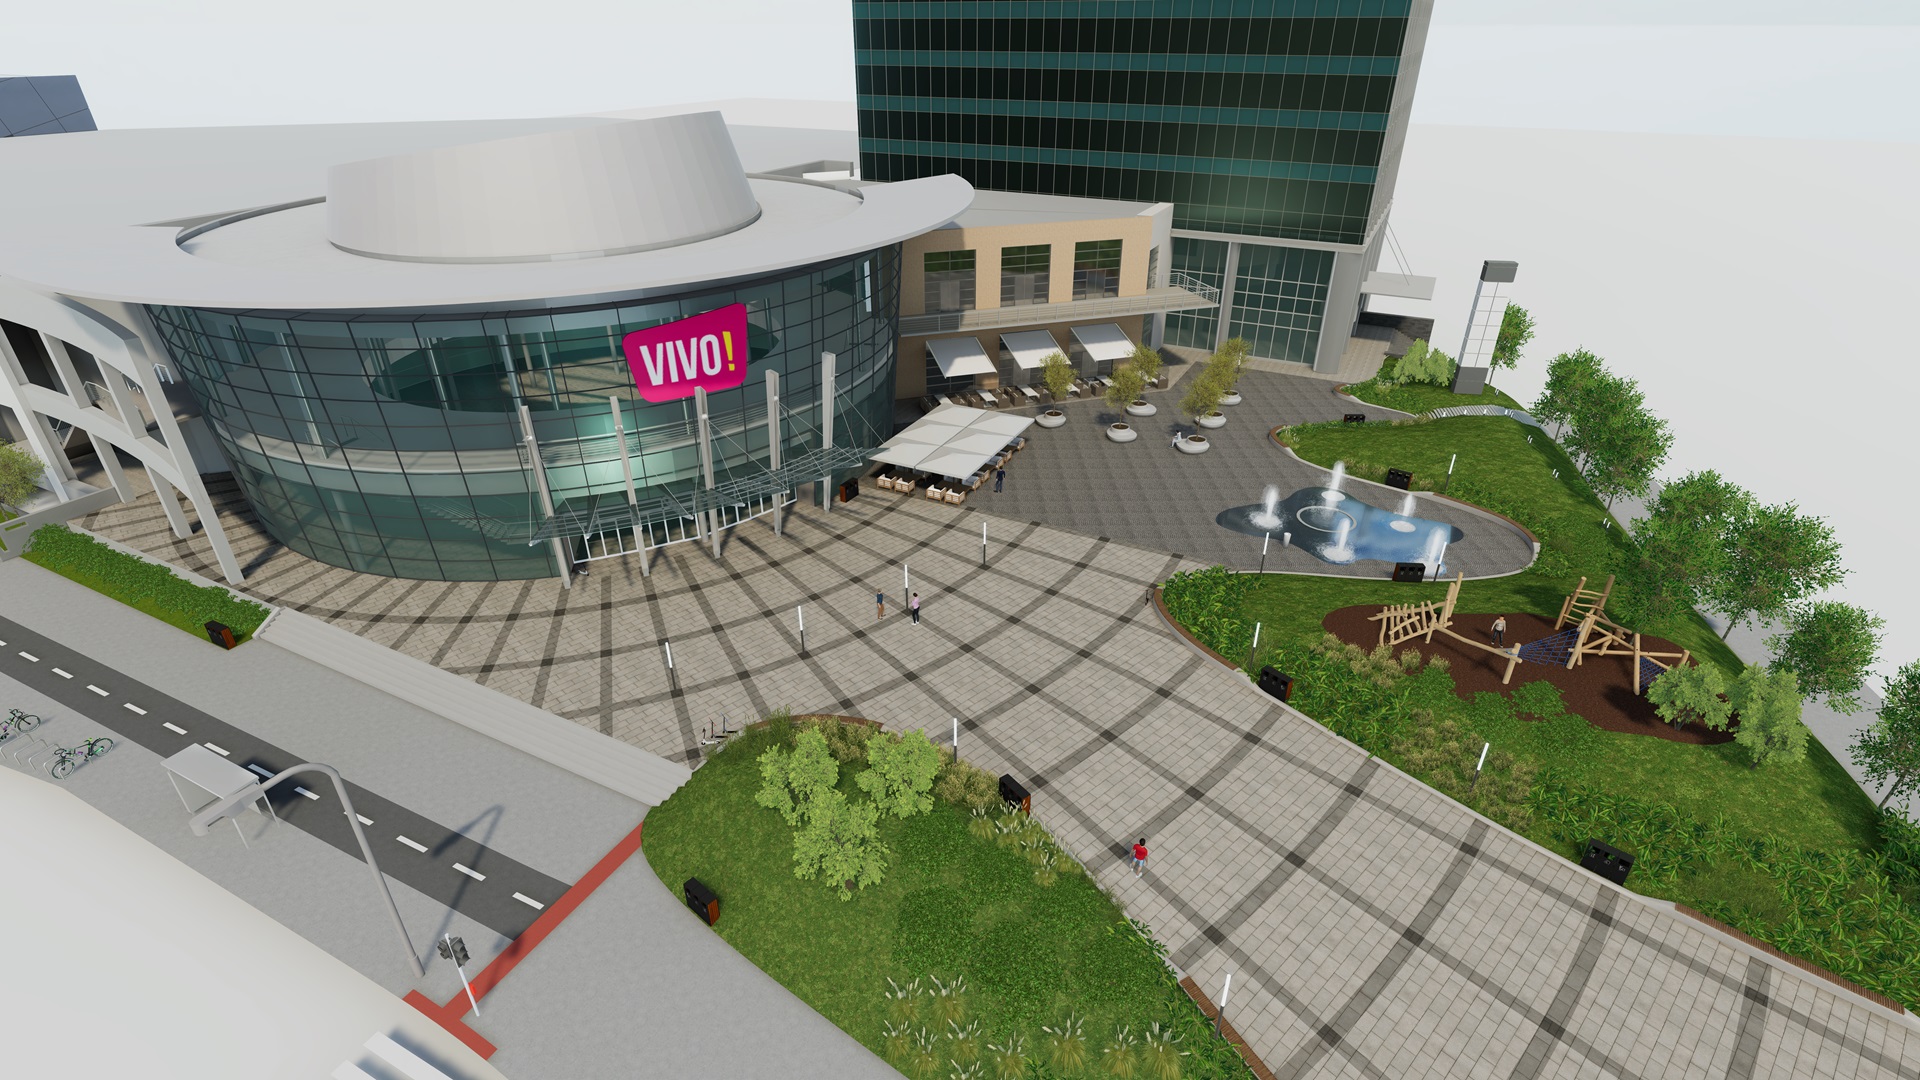 Vizualizácia zrekonštruovaného námestia pred nákupným centrom Vivo! 